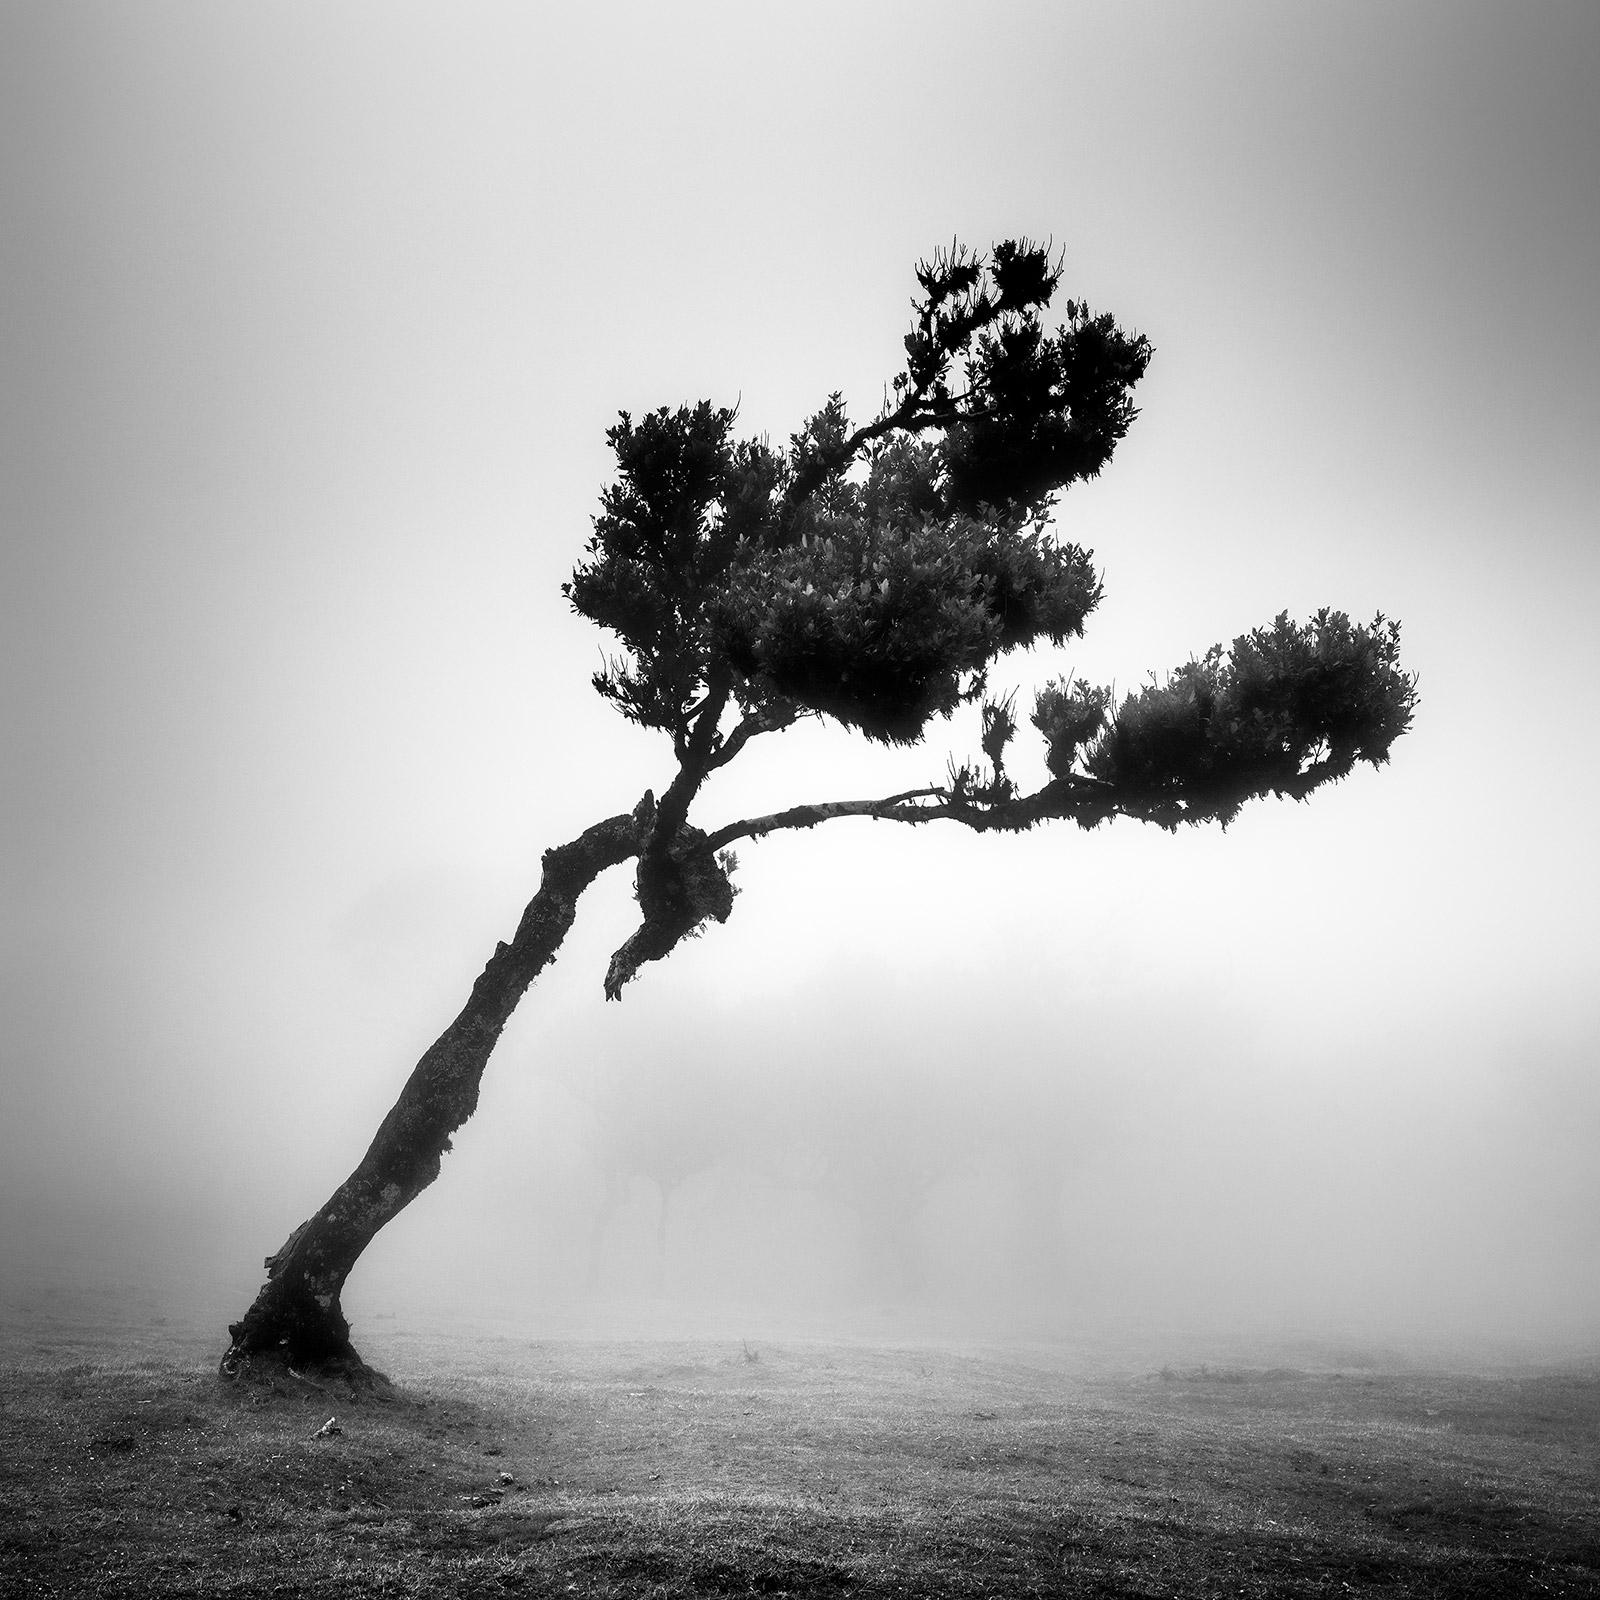 Hirsch im märchenhaften Wald, mystischer Baum, Madeira, Schwarz-Weiß-Landschaftskunst-Foto 